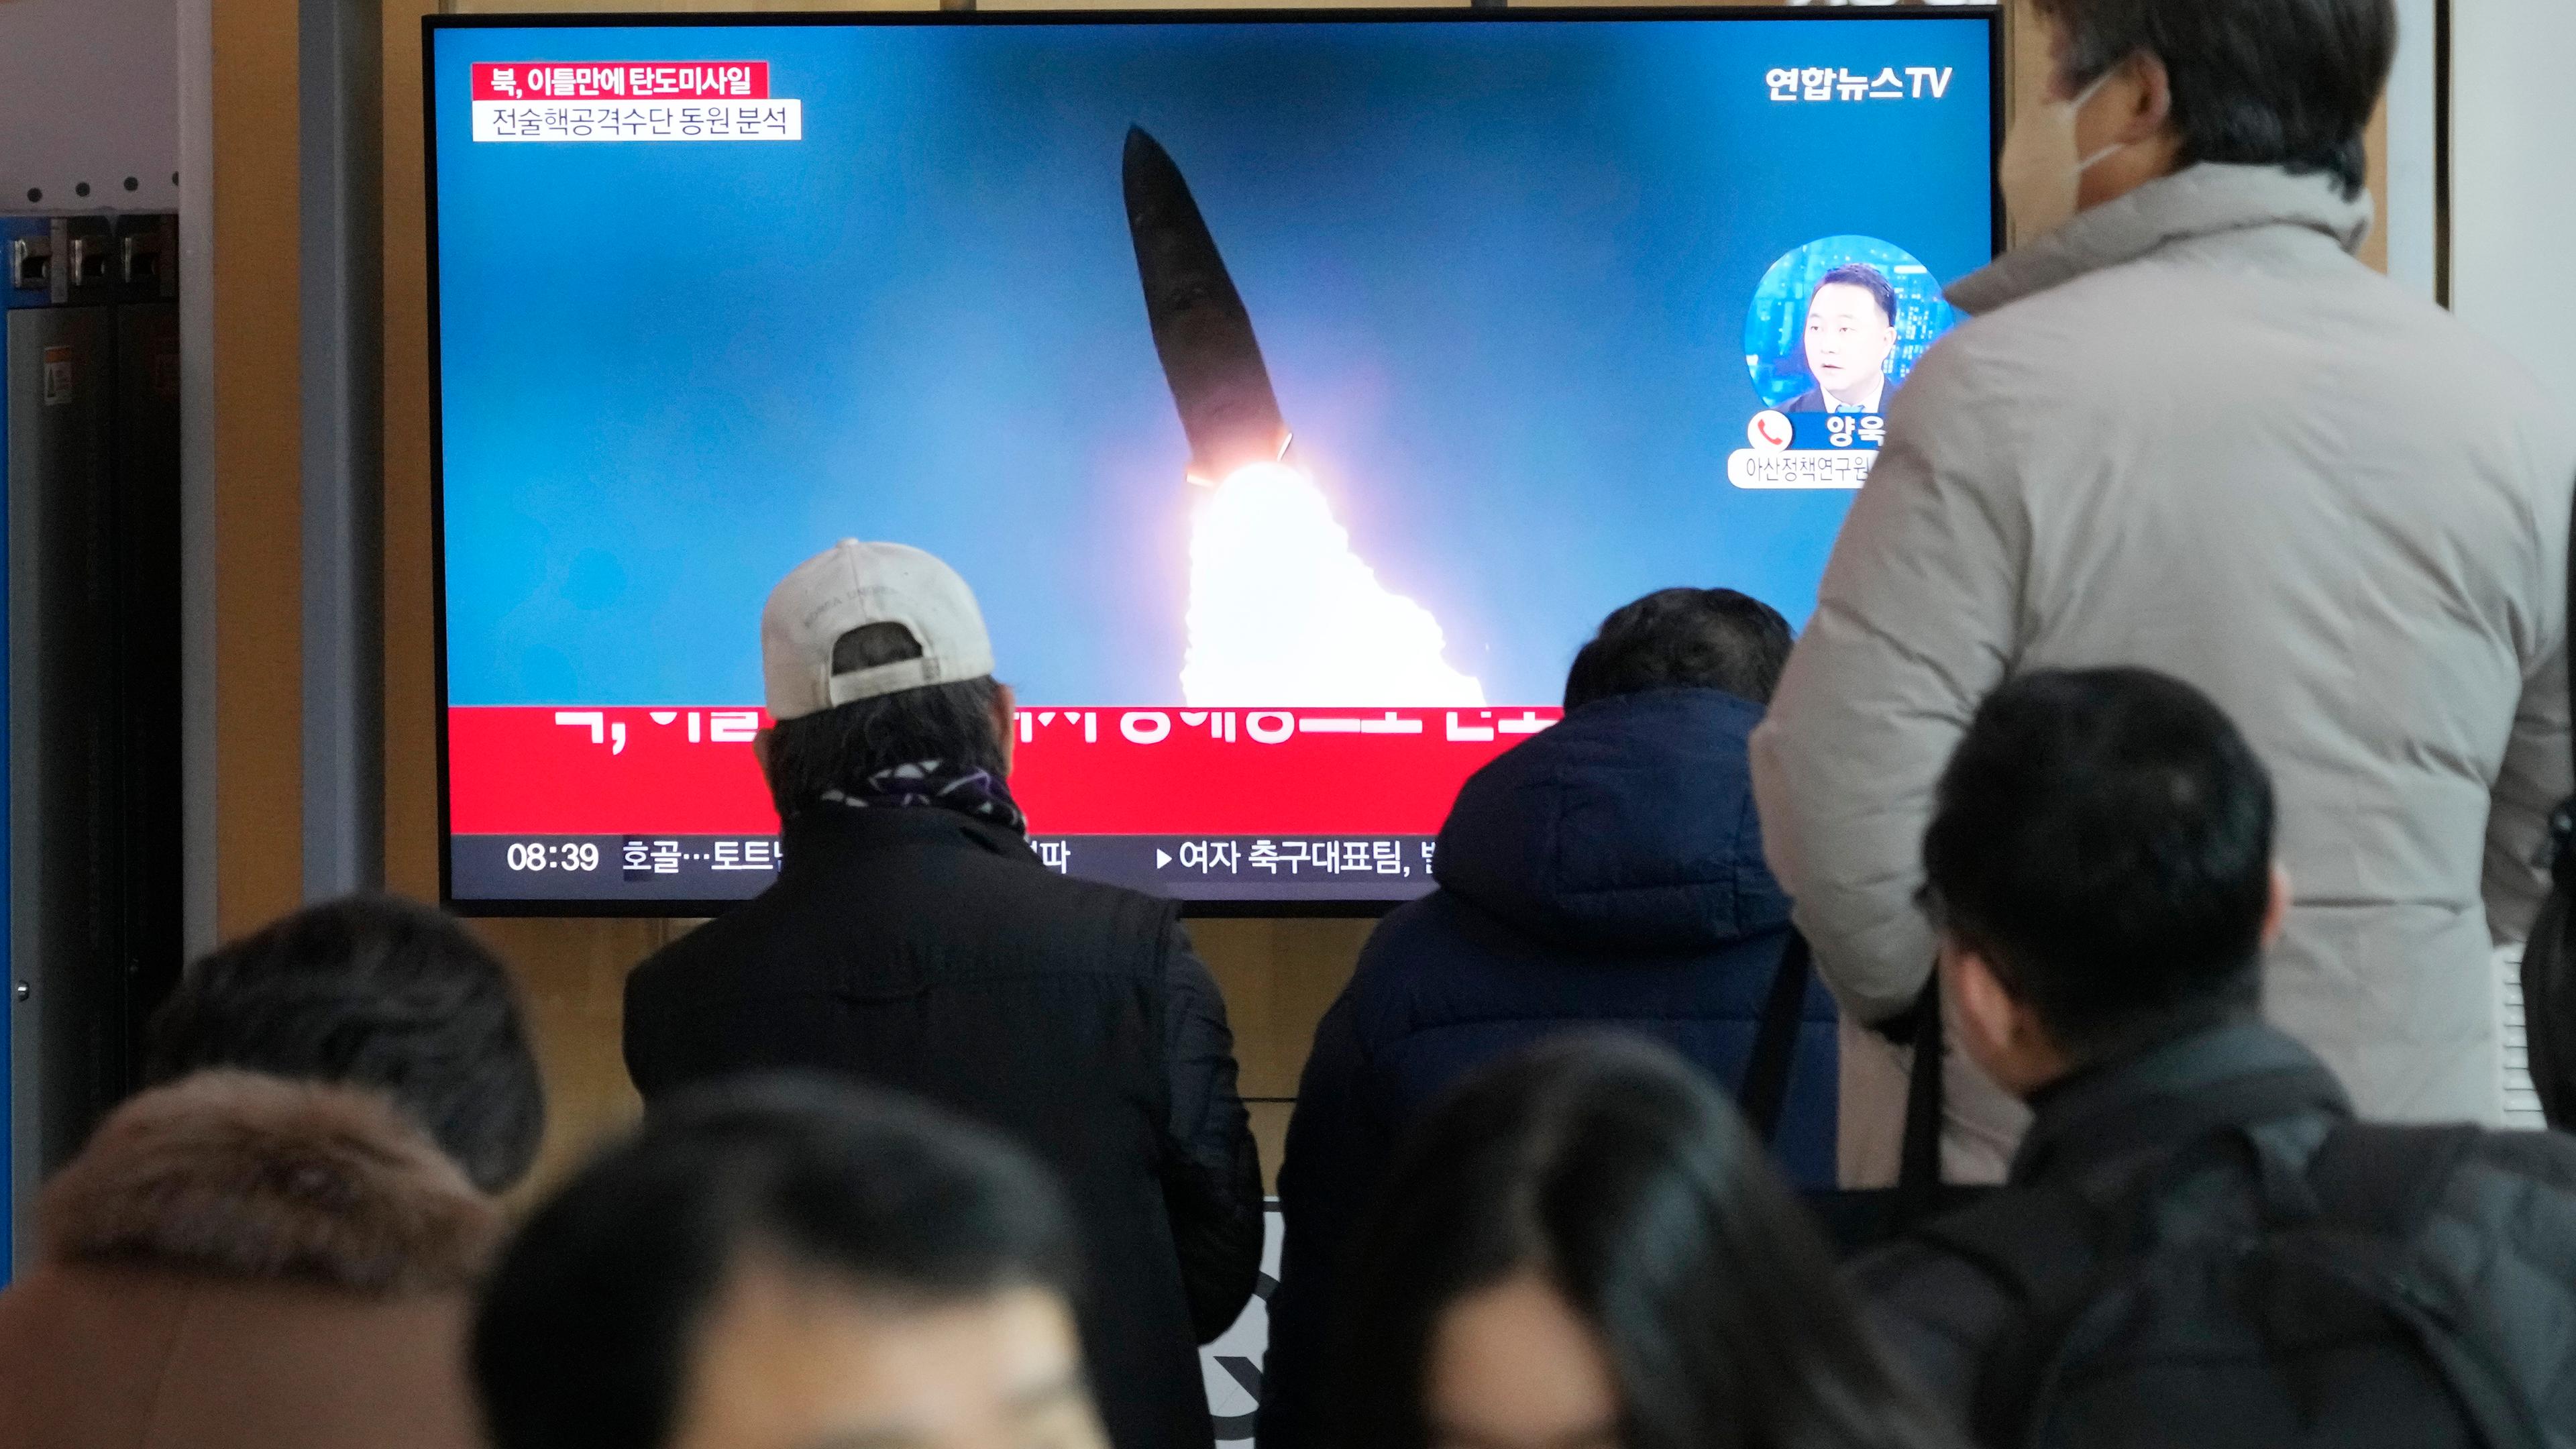 Ein Fernsehbildschirm zeigt ein Archivbild eines nordkoreanischen Raketenstarts während einer Nachrichtensendung im Bahnhof von Seoul.